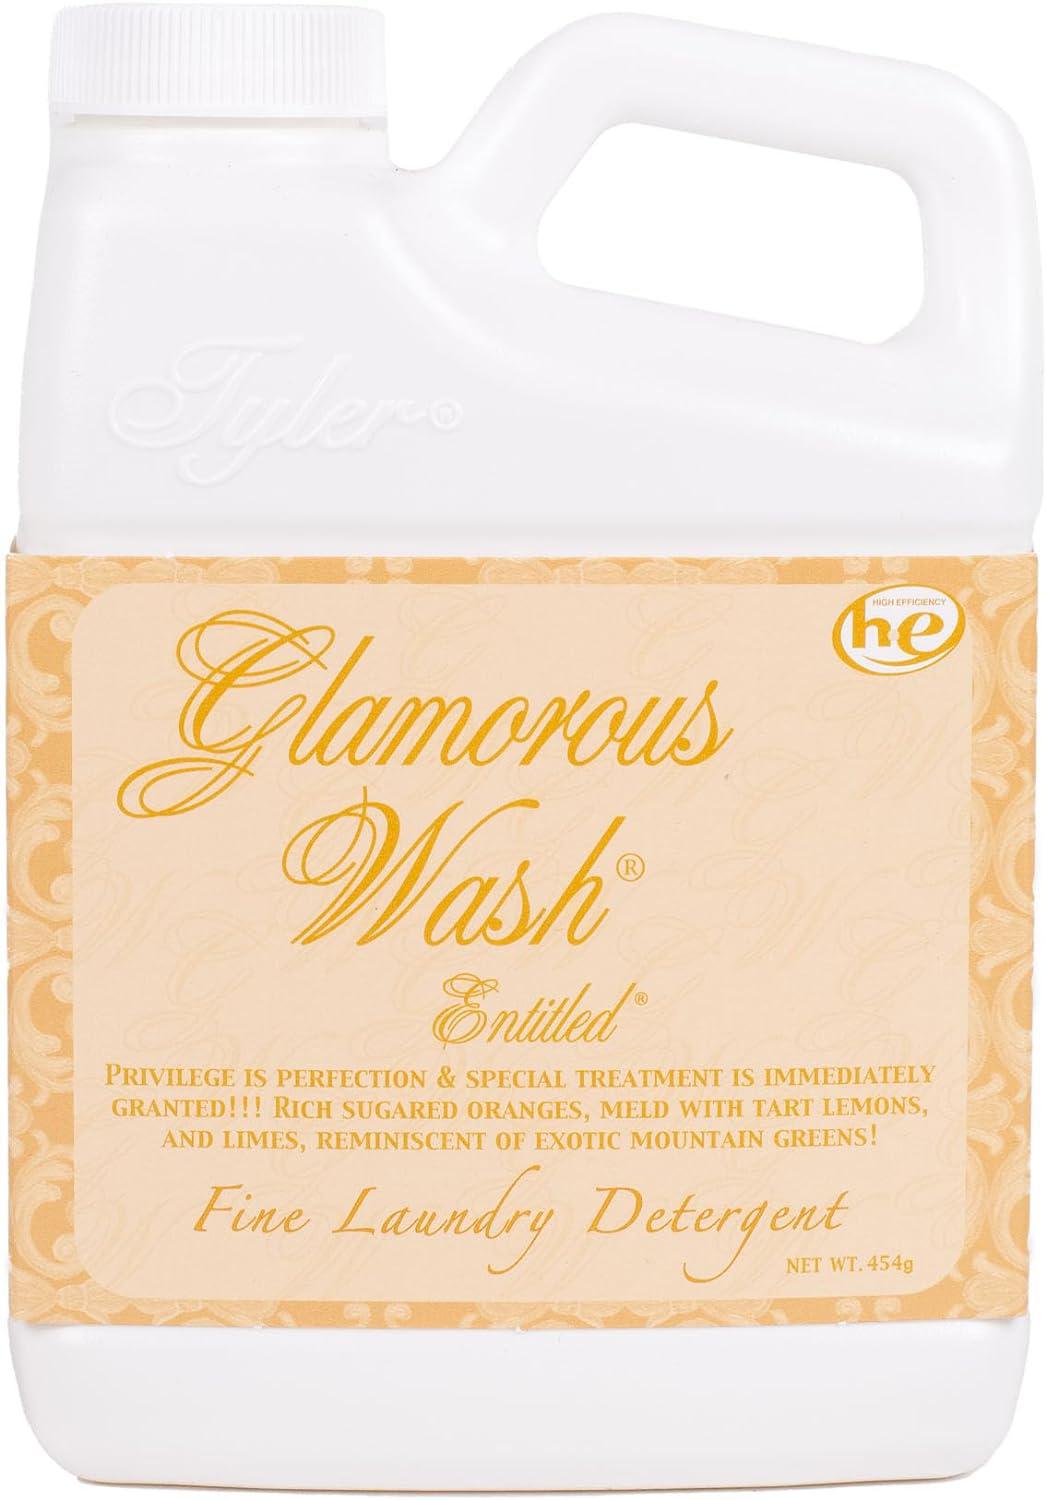 Entitled Glamourous Wash